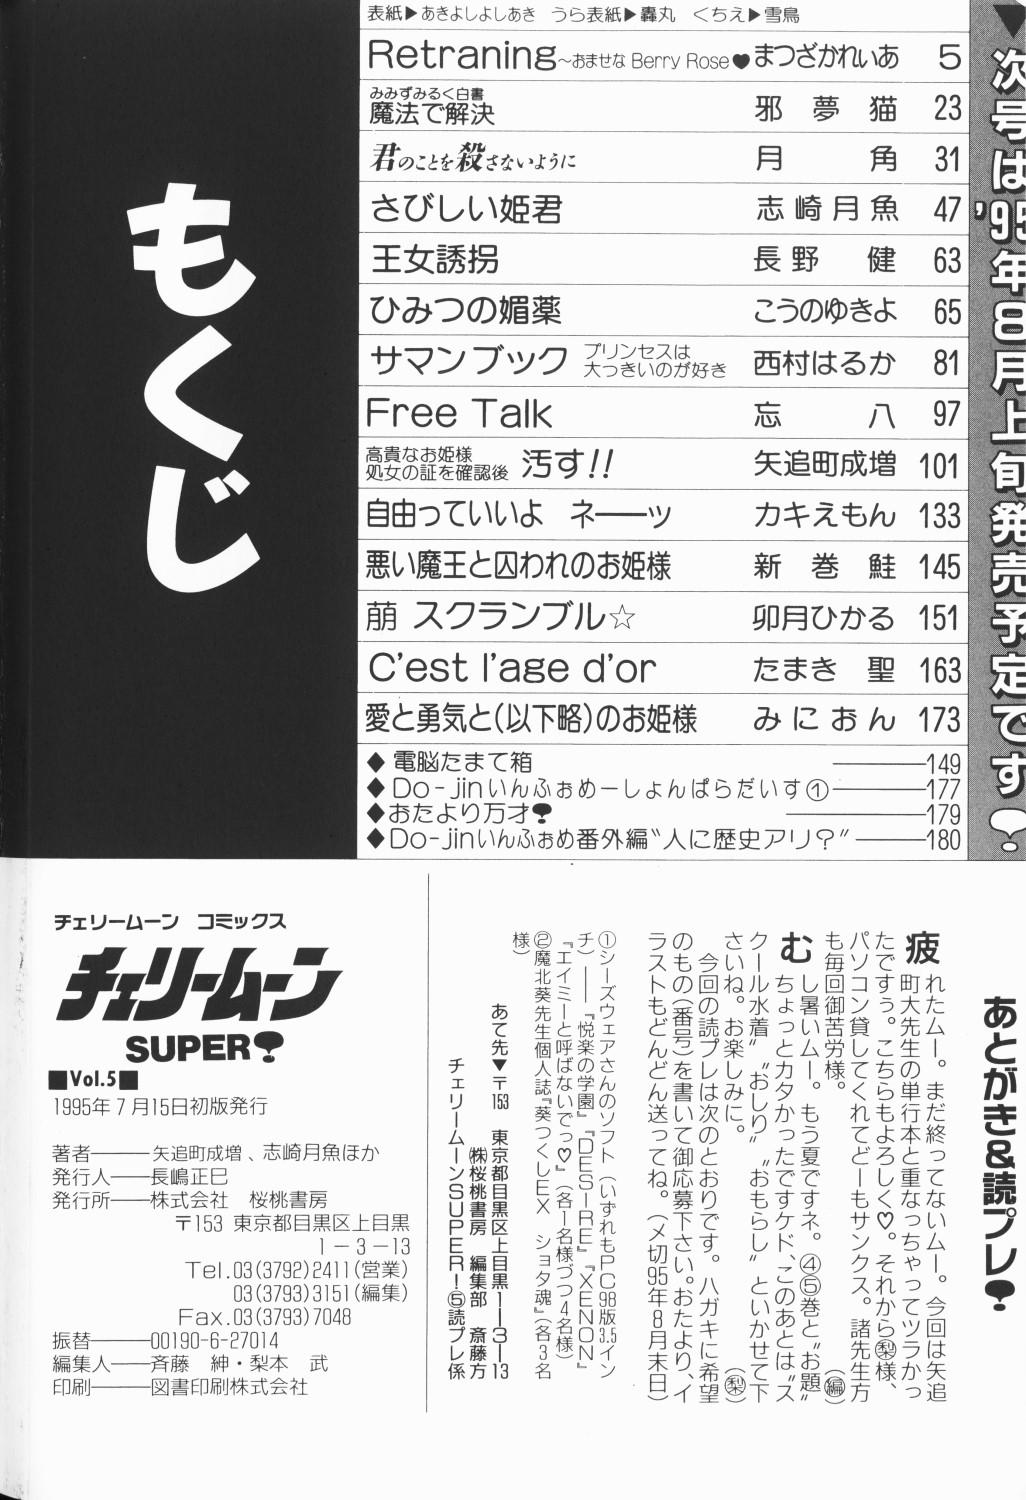 Cherry Moon SUPER! Vol. 5 182